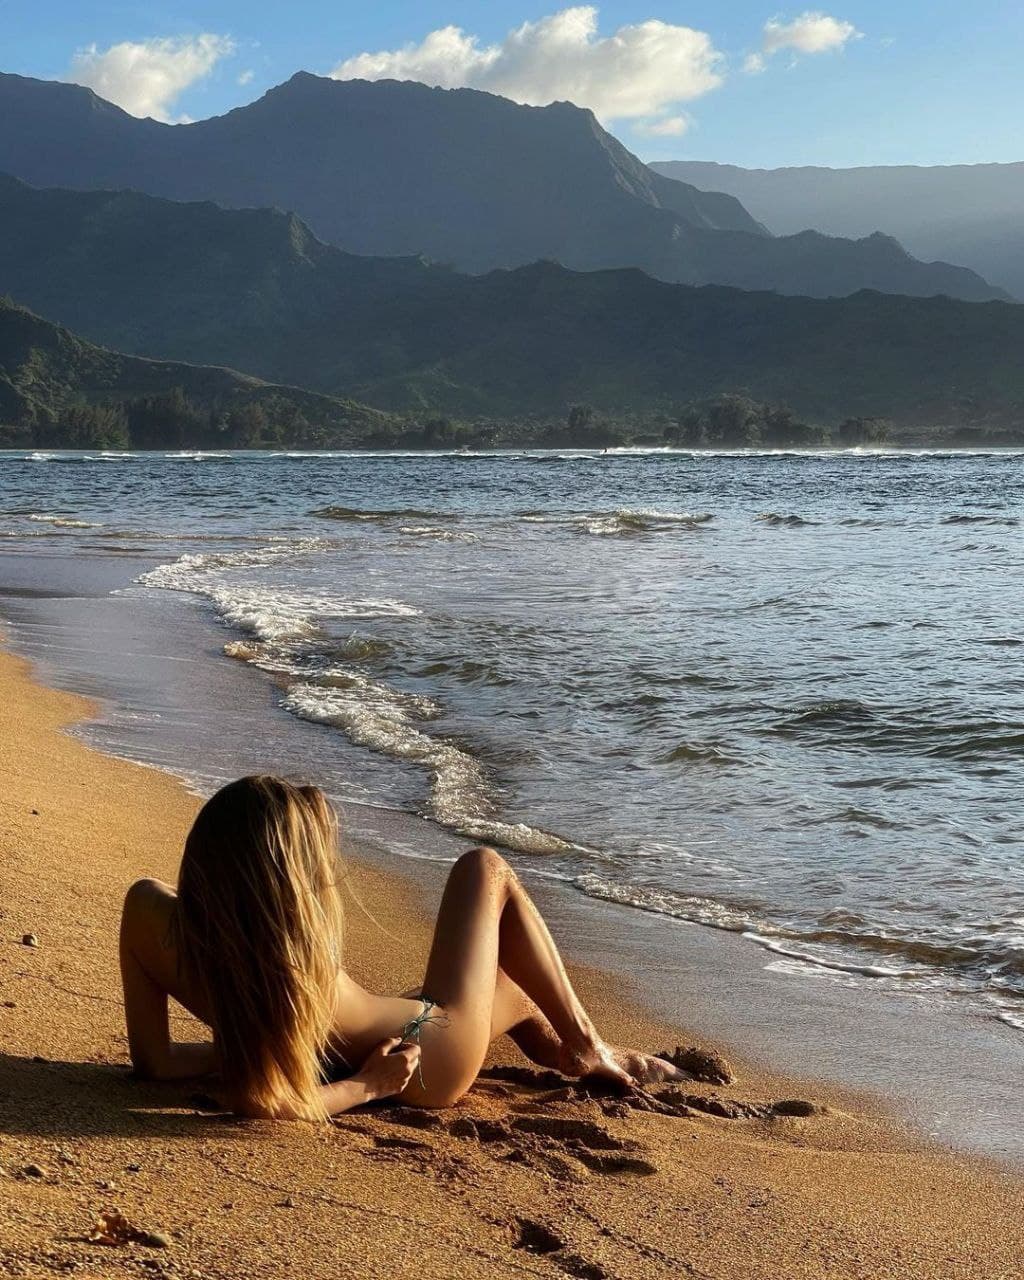 Релакс и фантастические пейзажи: каникулы Софии Евдокименко на Гавайях